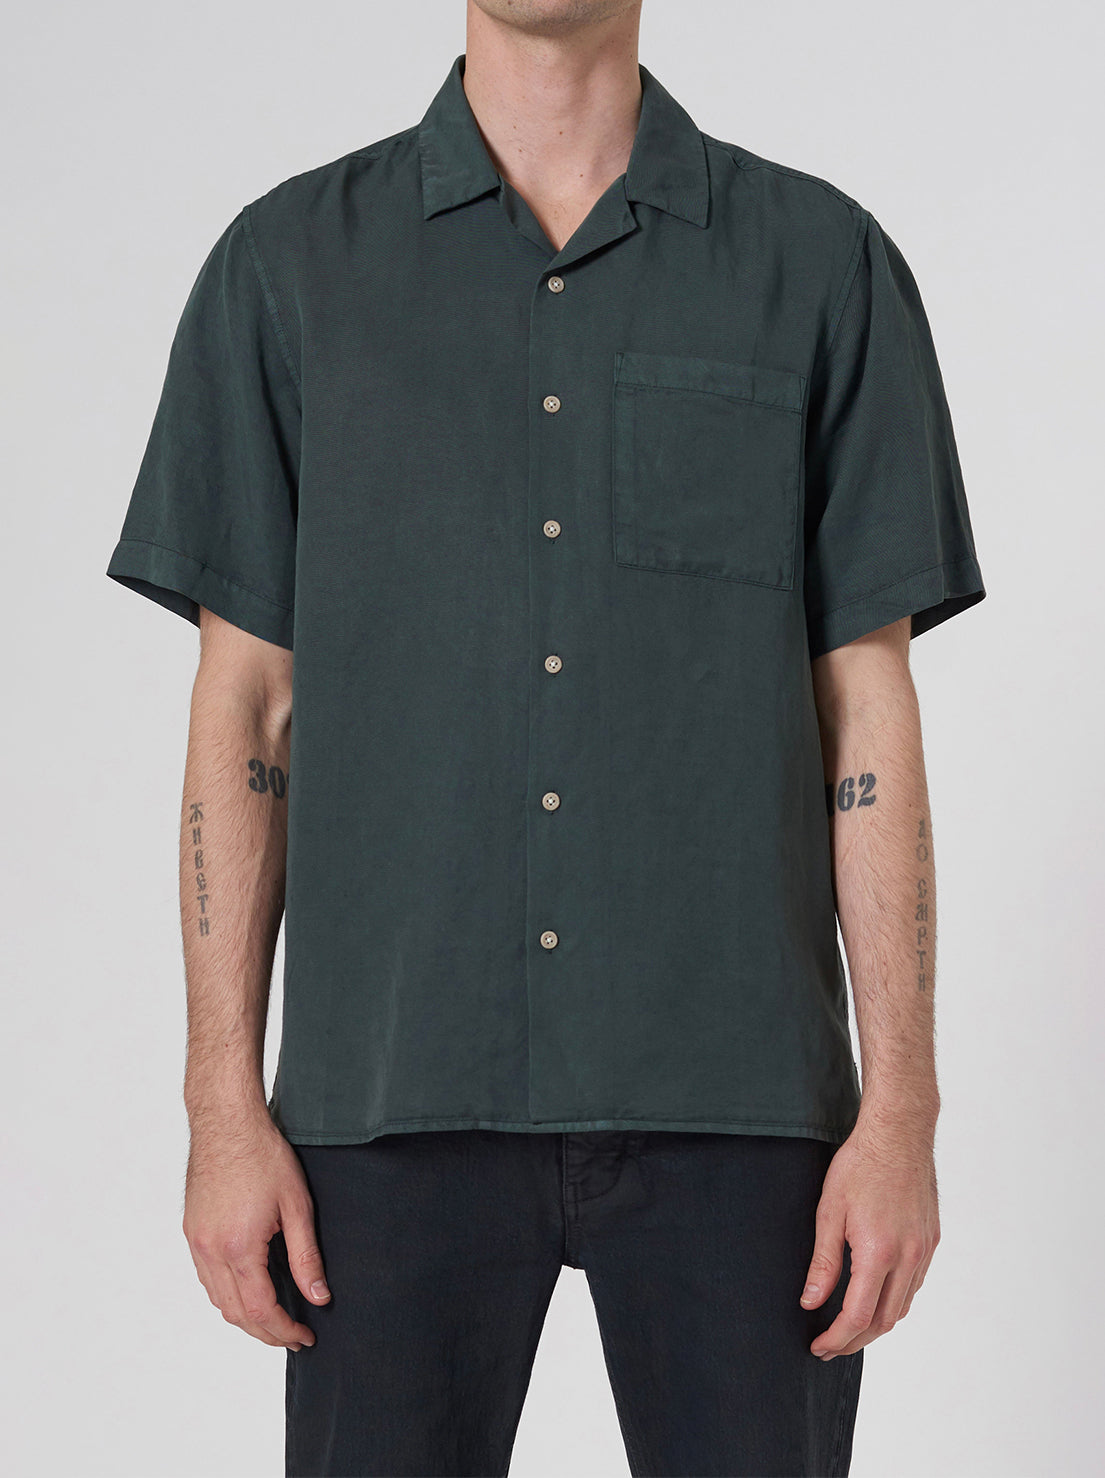 Neuw - Curtis S/S Shirt - Spruce Green